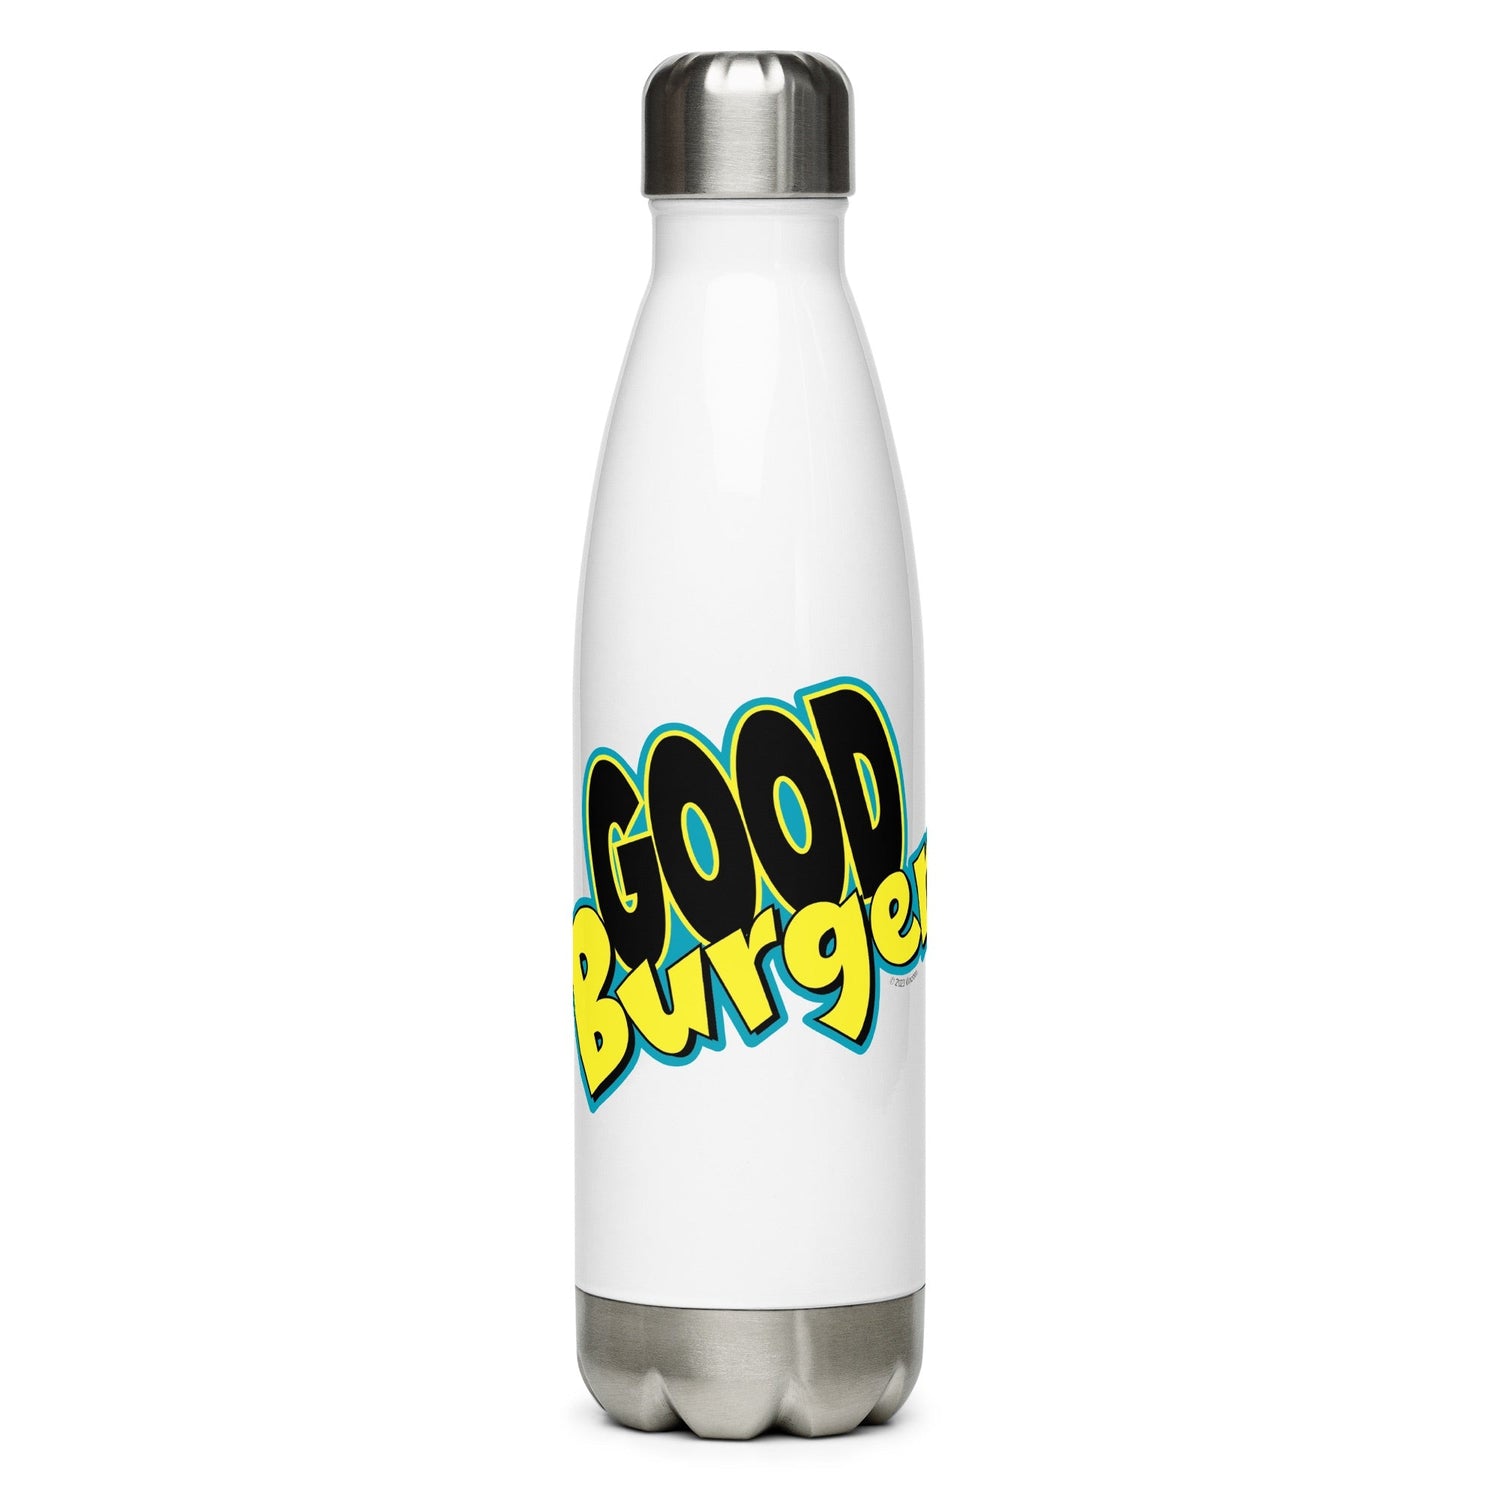 Good Burger Logo Stainless Steel Water Bottle - Paramount Shop